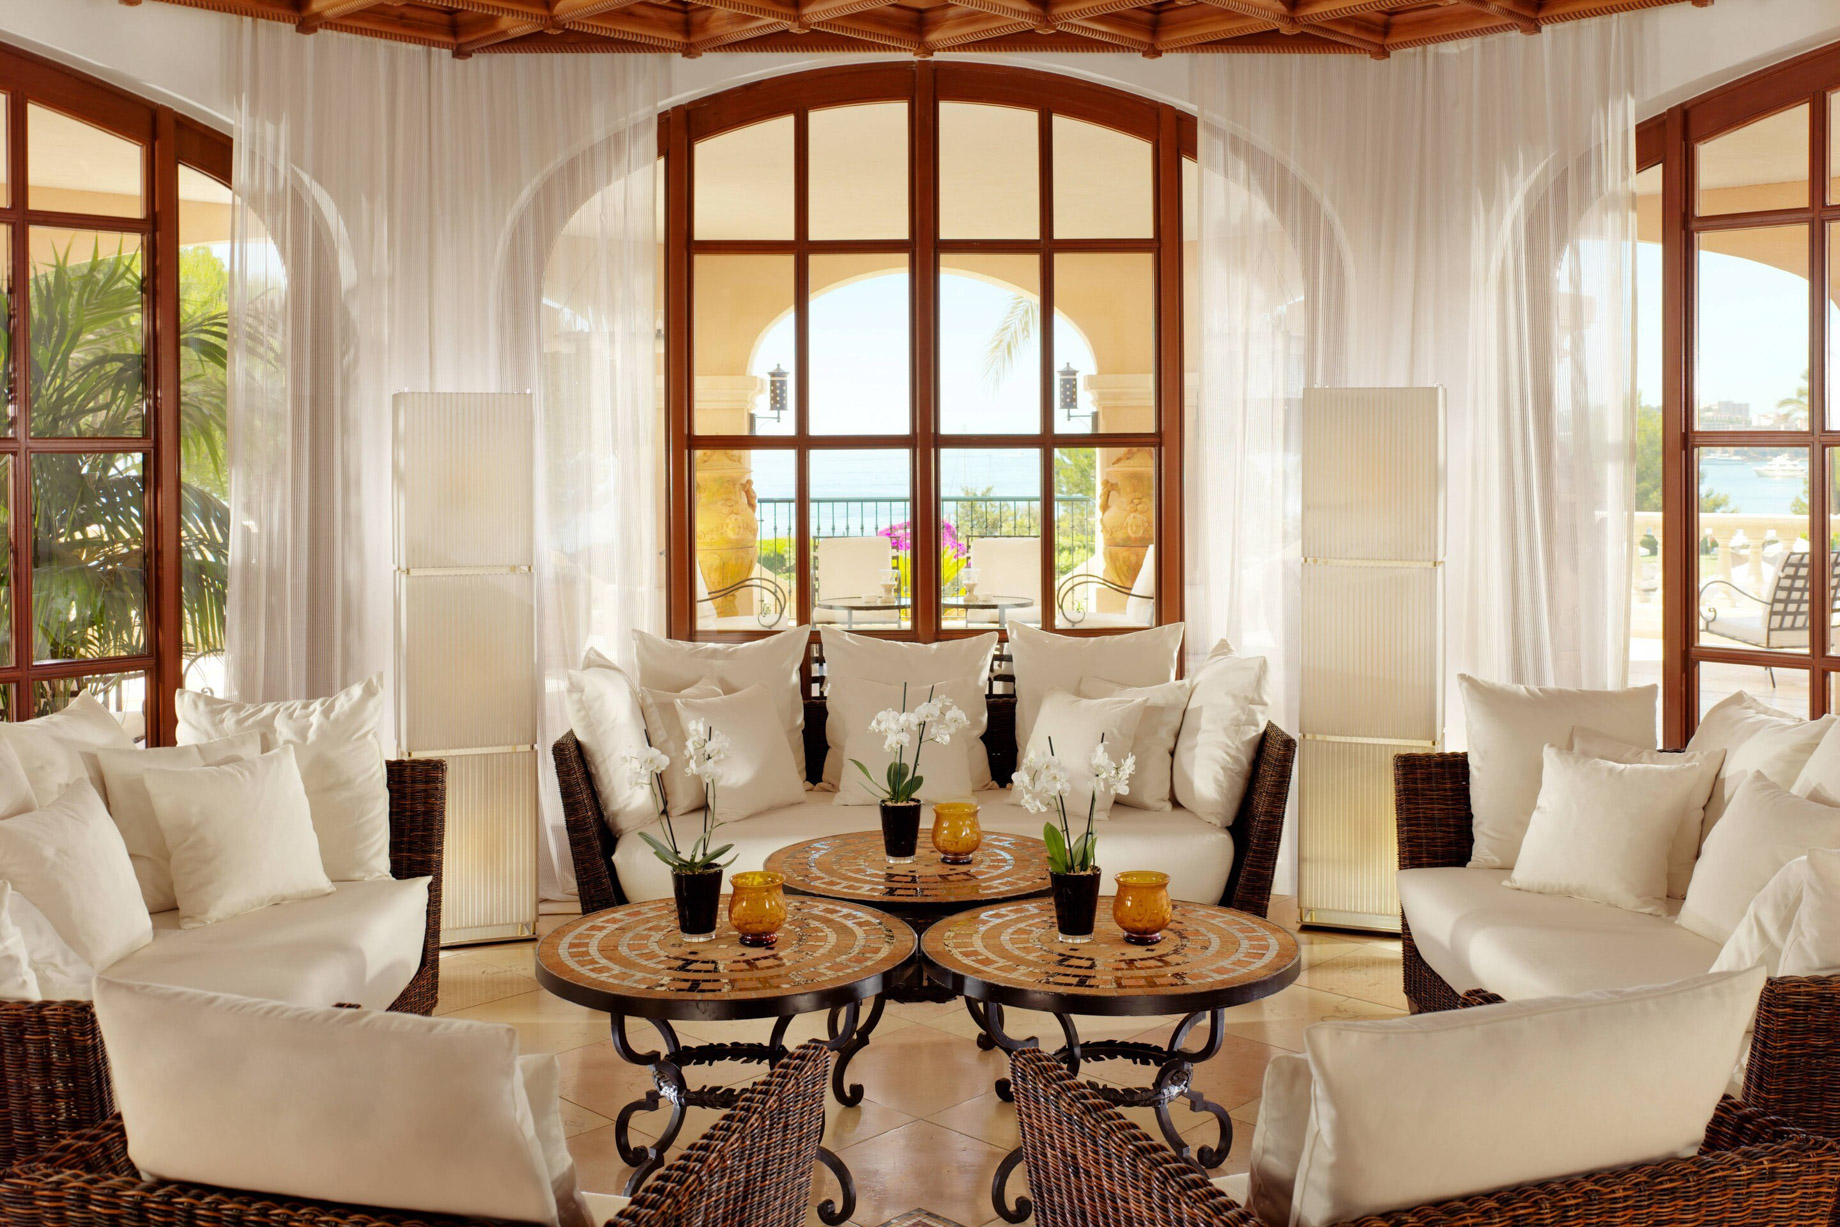 The St. Regis Mardavall Mallorca Resort – Palma de Mallorca, Spain – Moroccan Lounge